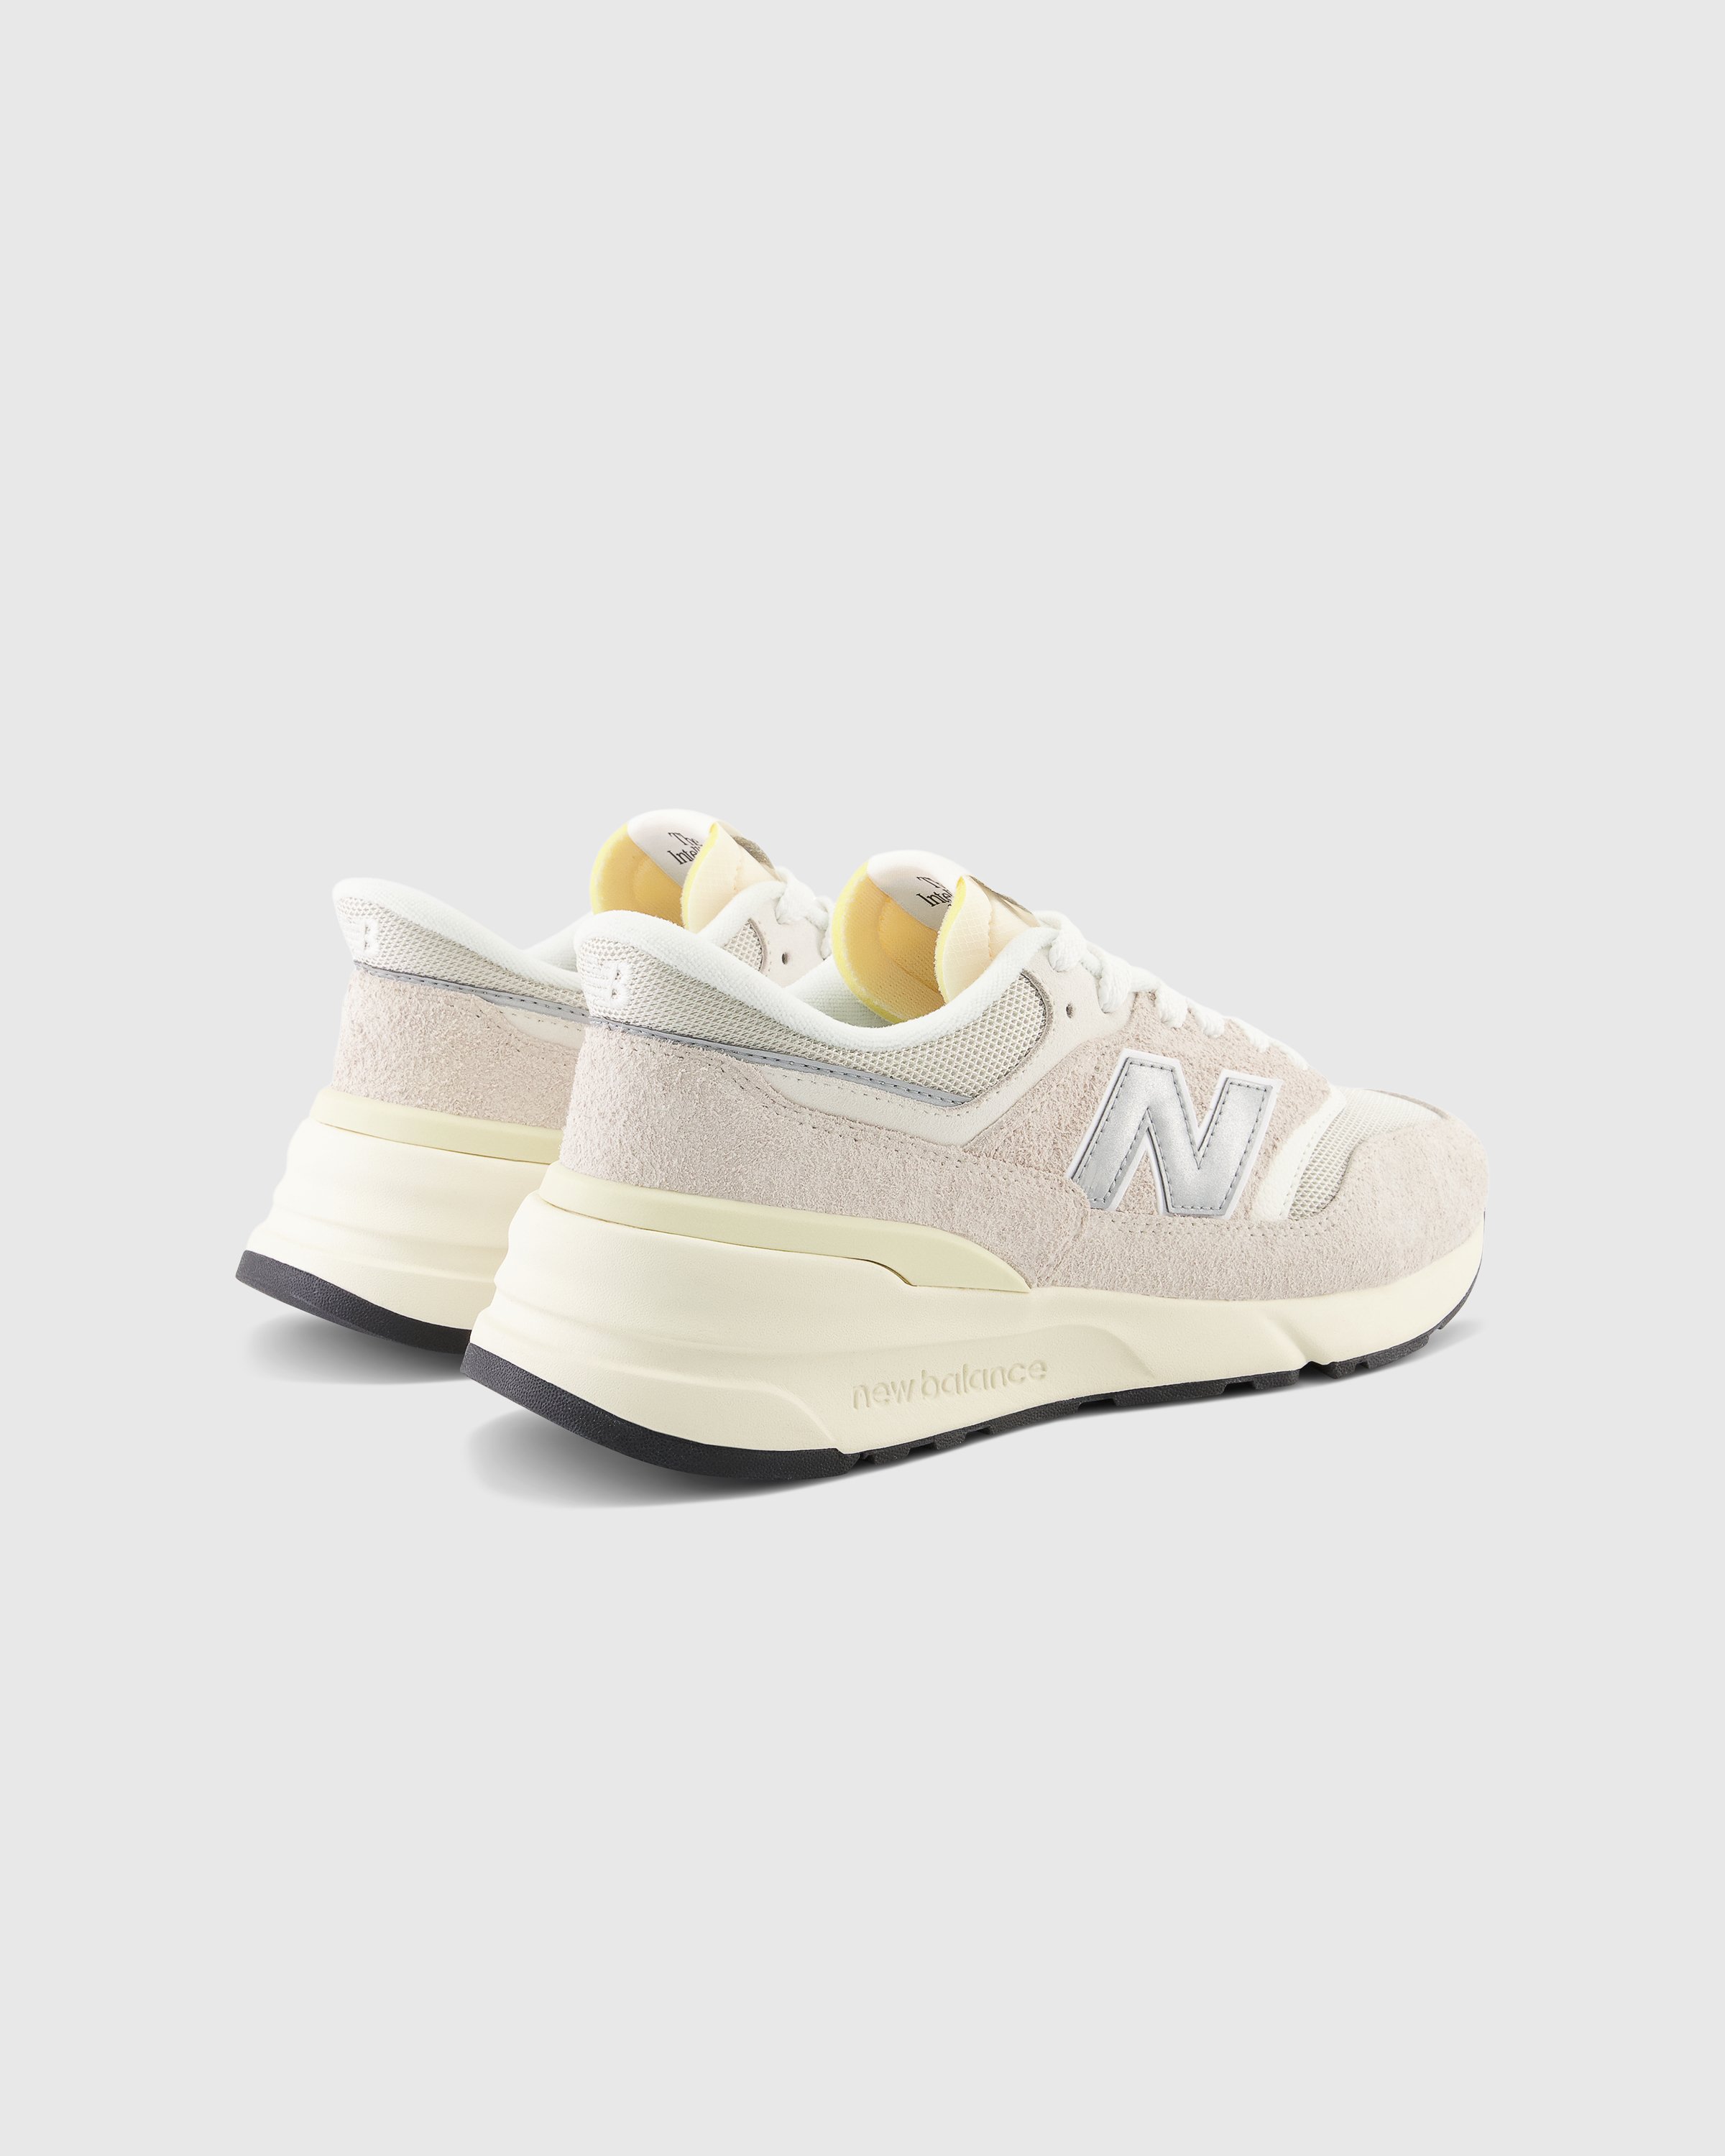 New Balance - U 997R CB Grey - Footwear - Grey - Image 3